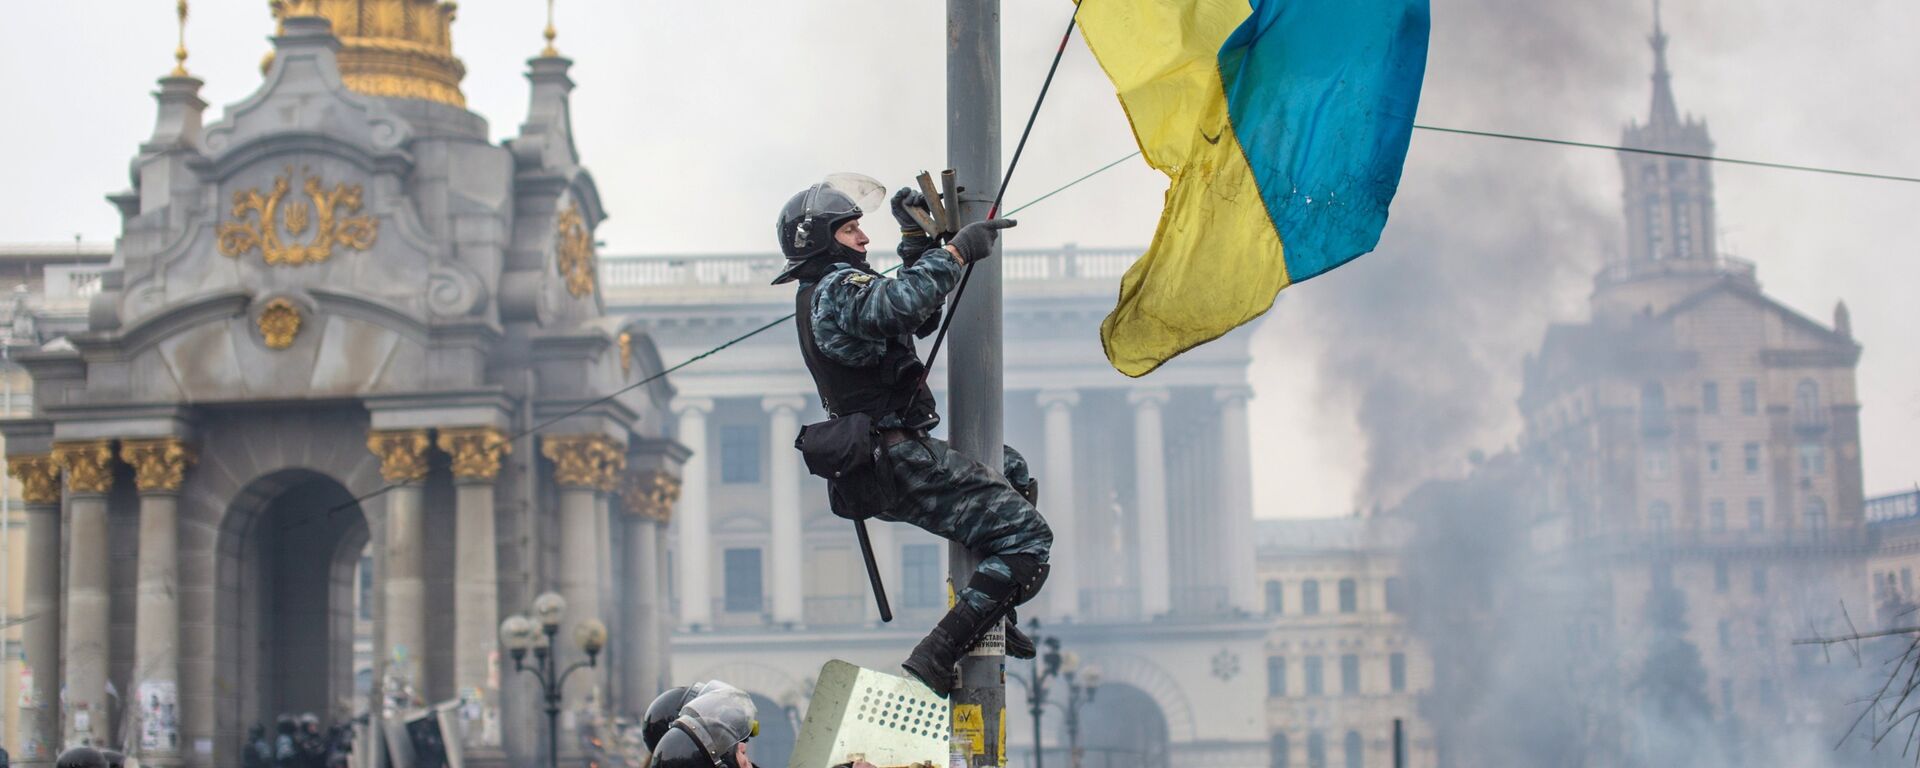 El golpe de Estado de 2014 conocido como Euromaidán - Sputnik Mundo, 1920, 26.08.2022